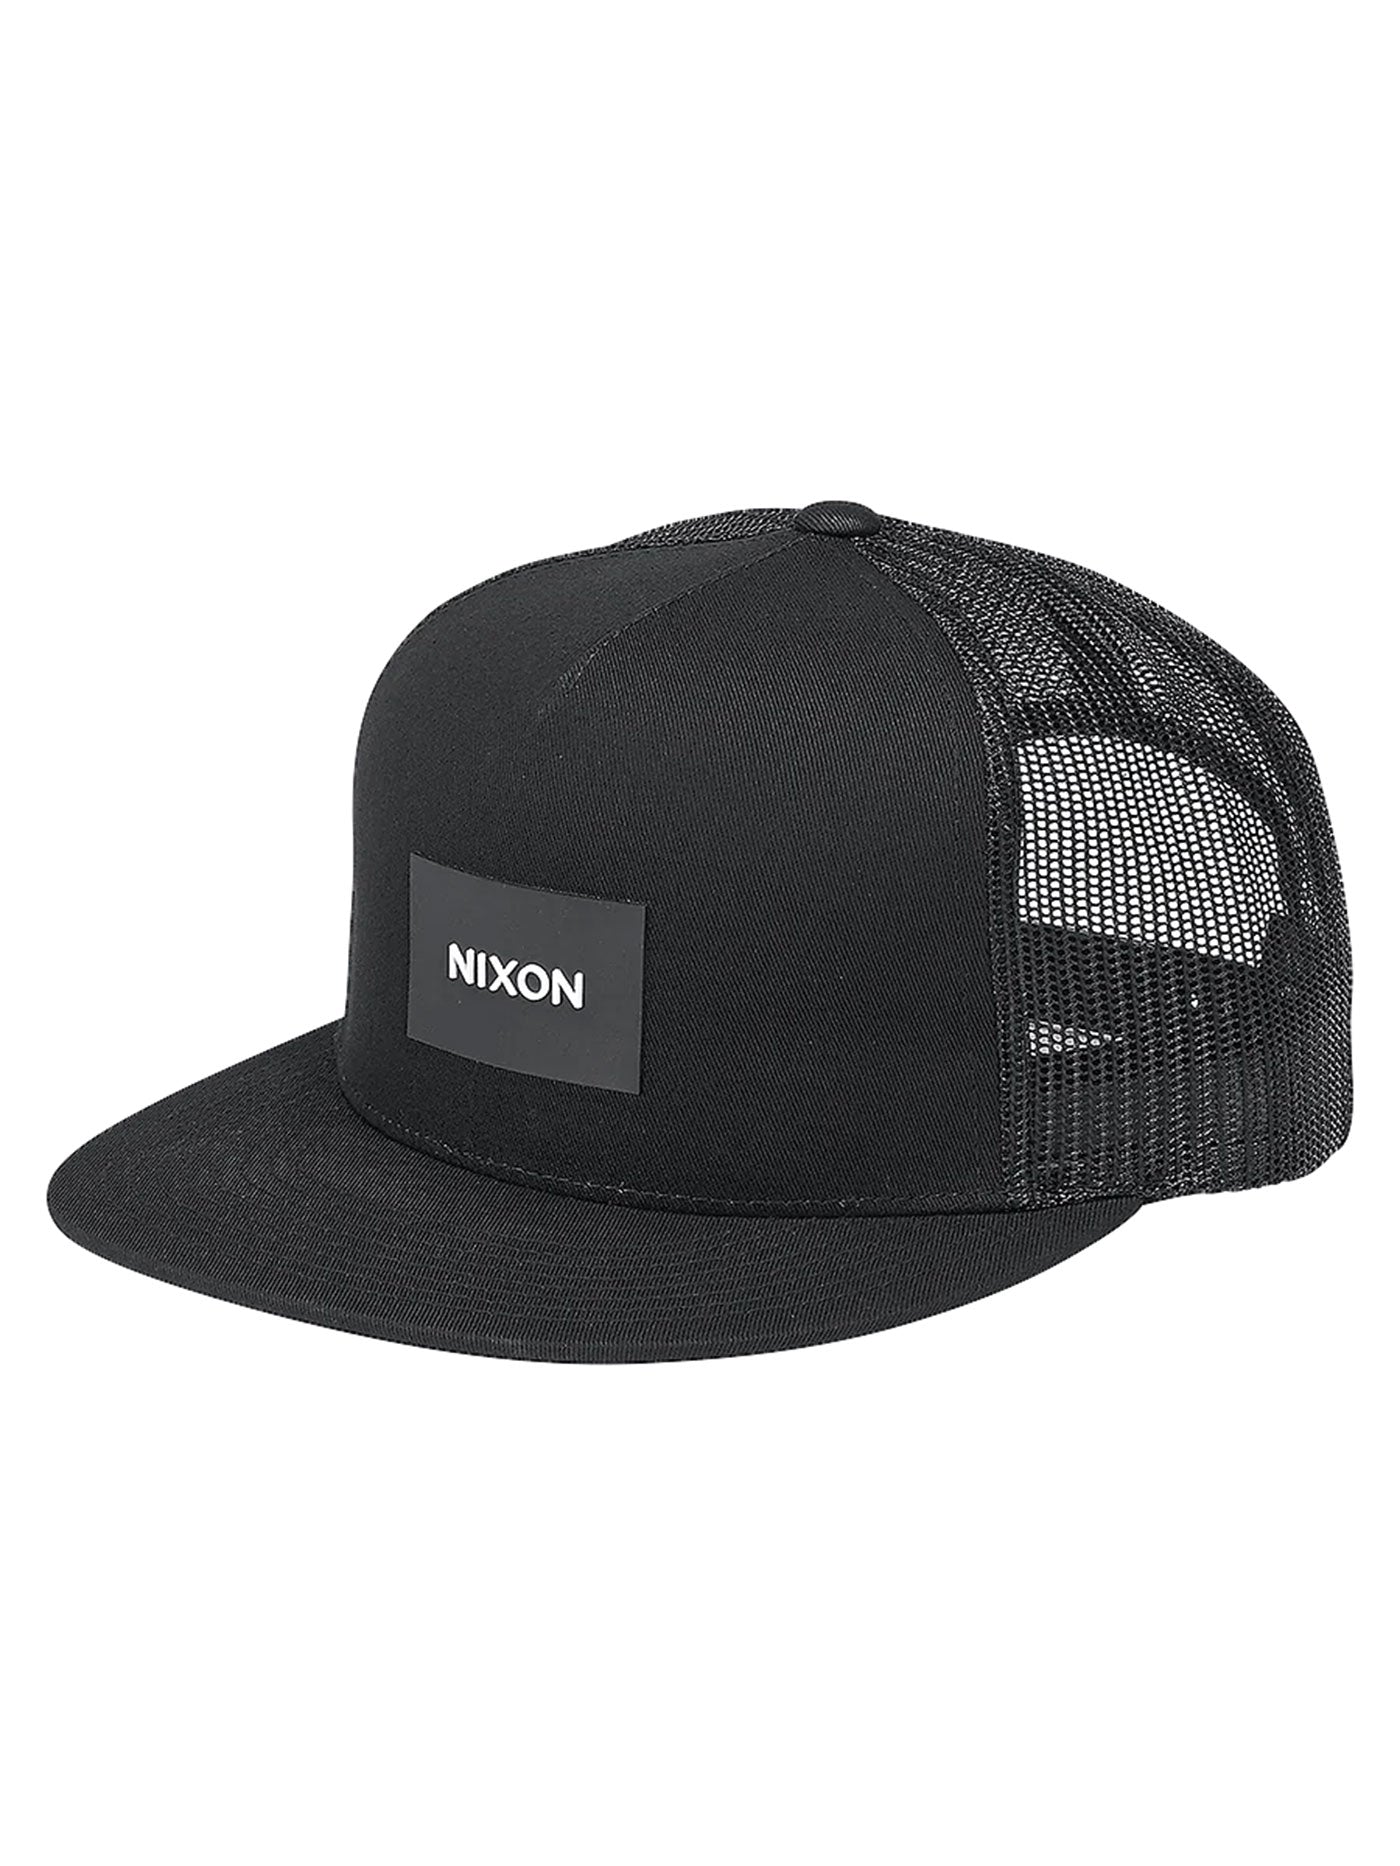 Nixon Team Trucker Snapback Hat